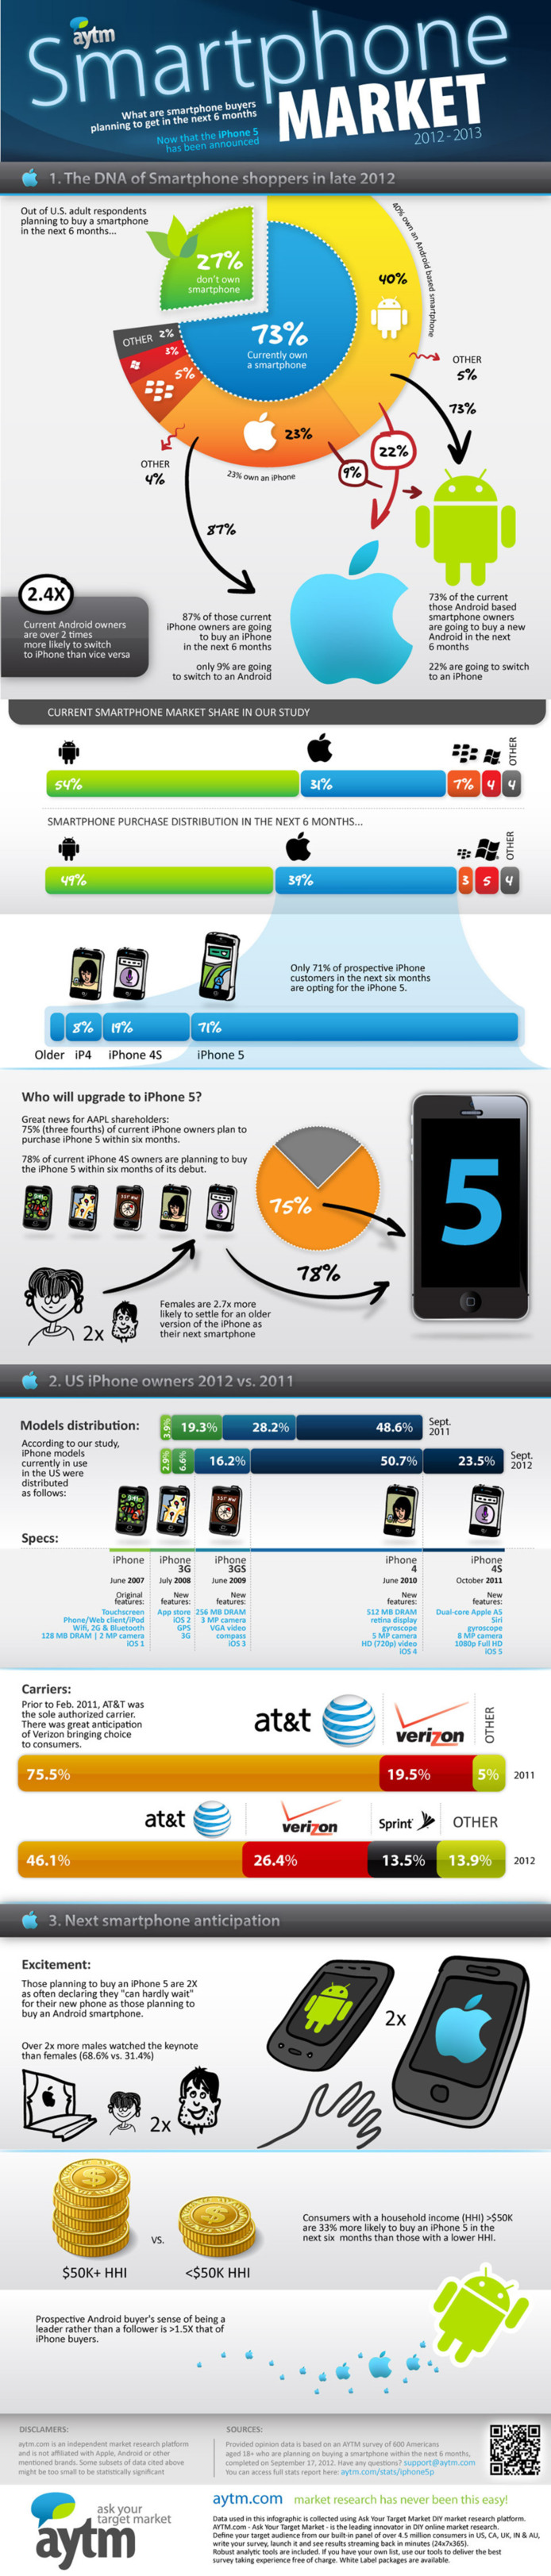 L'iPhone 5 peut il affecter le marché des smartphones? (en 1 image)